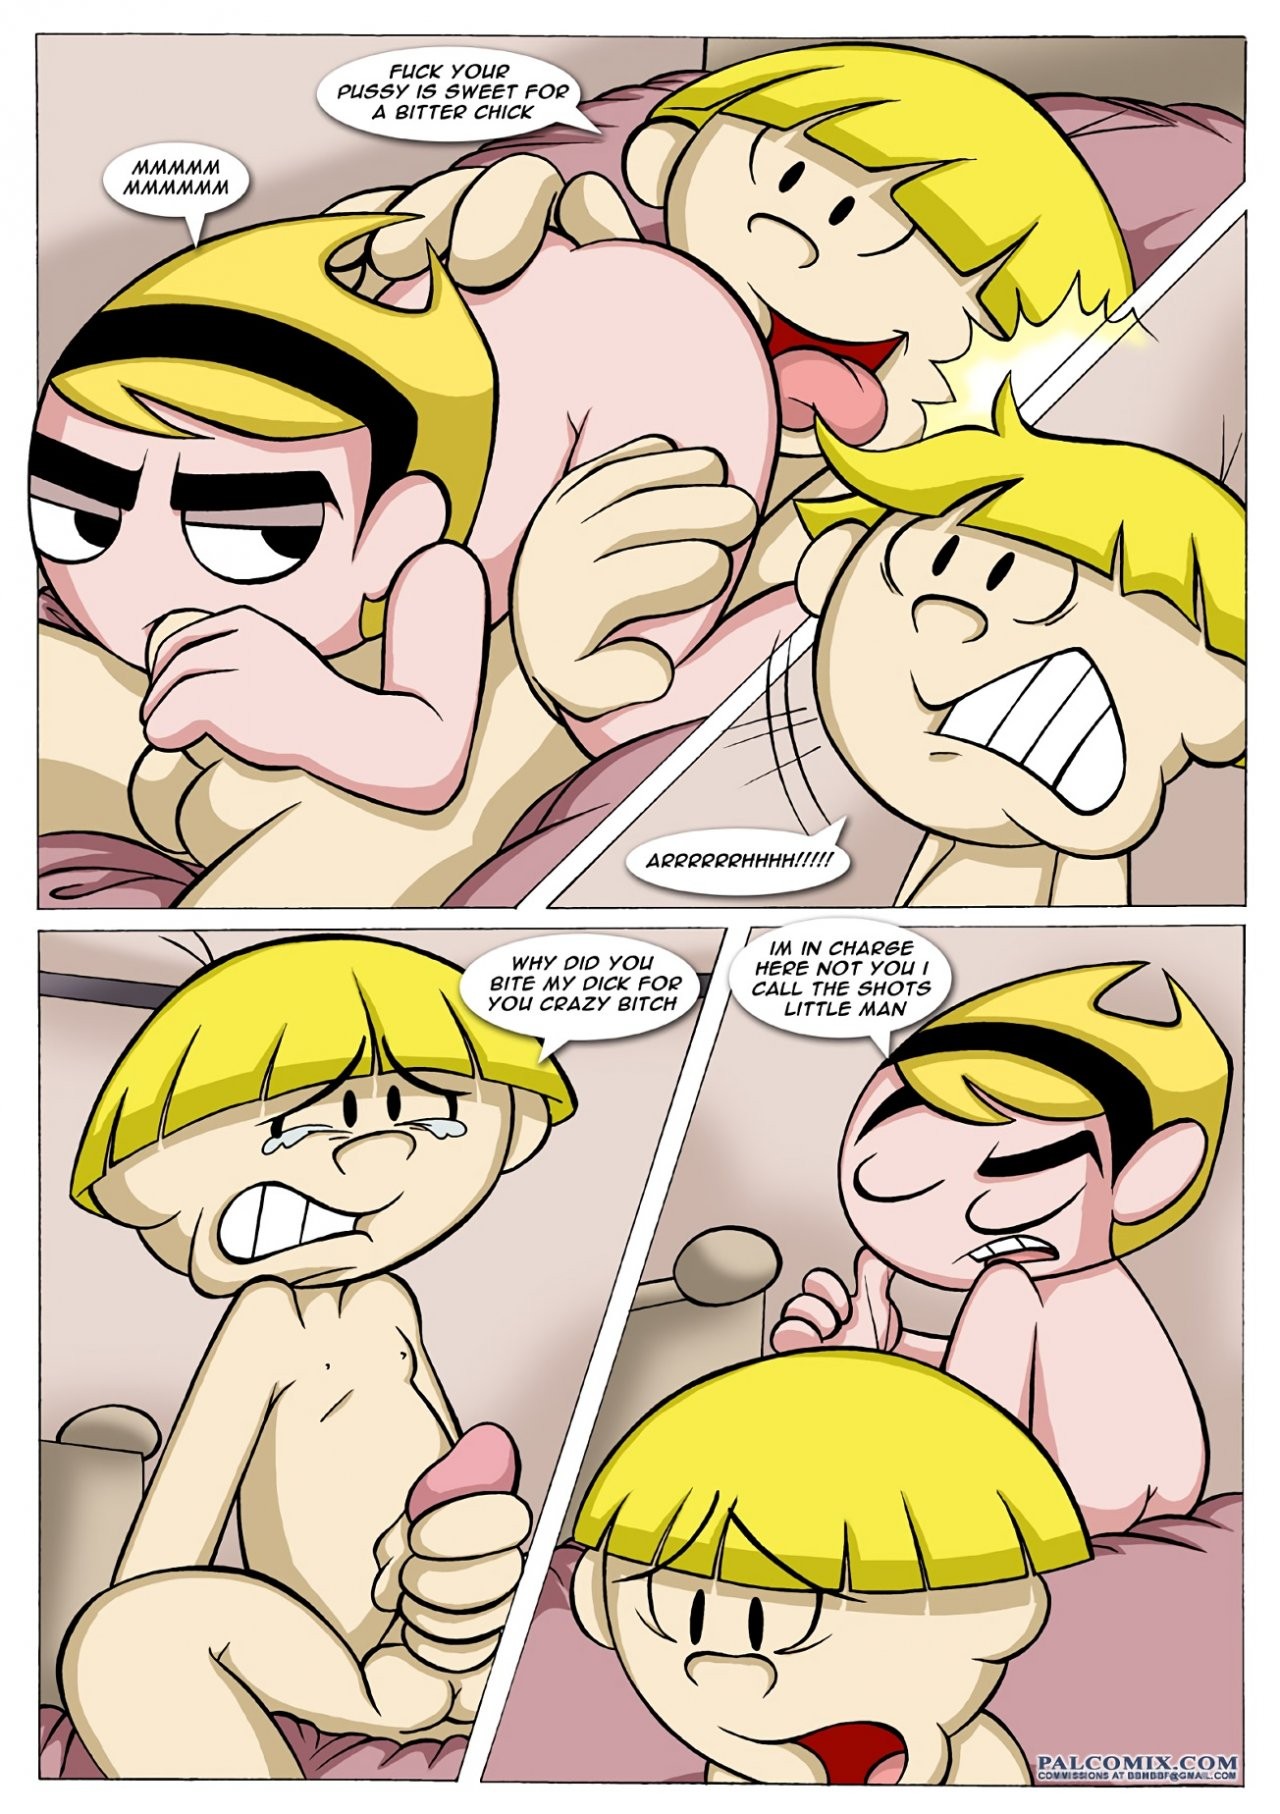 The Sex Adventures of the Kids Next Door 01 porn comic picture 5